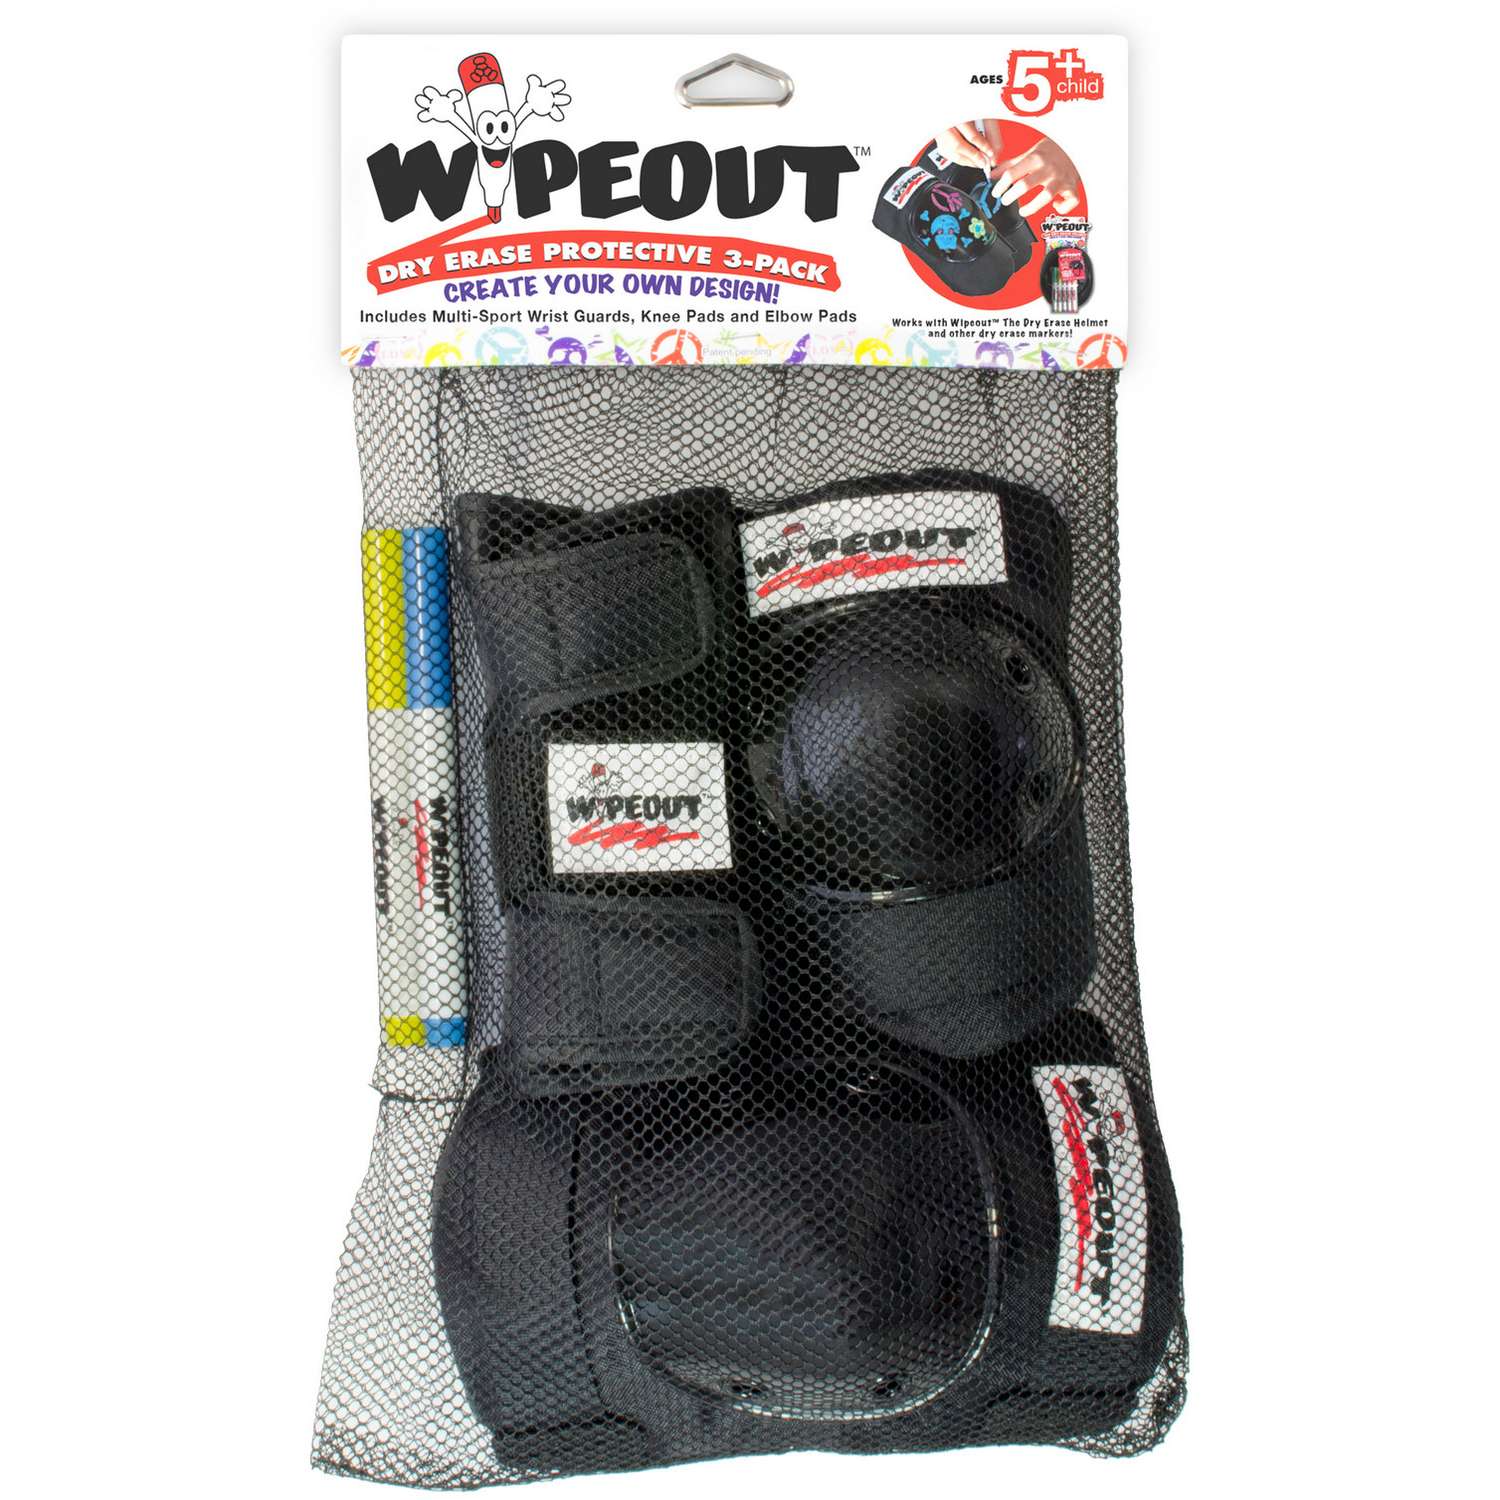 Комплект защиты 3-в-1 WIPEOUT Black чёрный - с фломастерами и трафаретами - наколенники / налокотники / защита запястья - фото 3